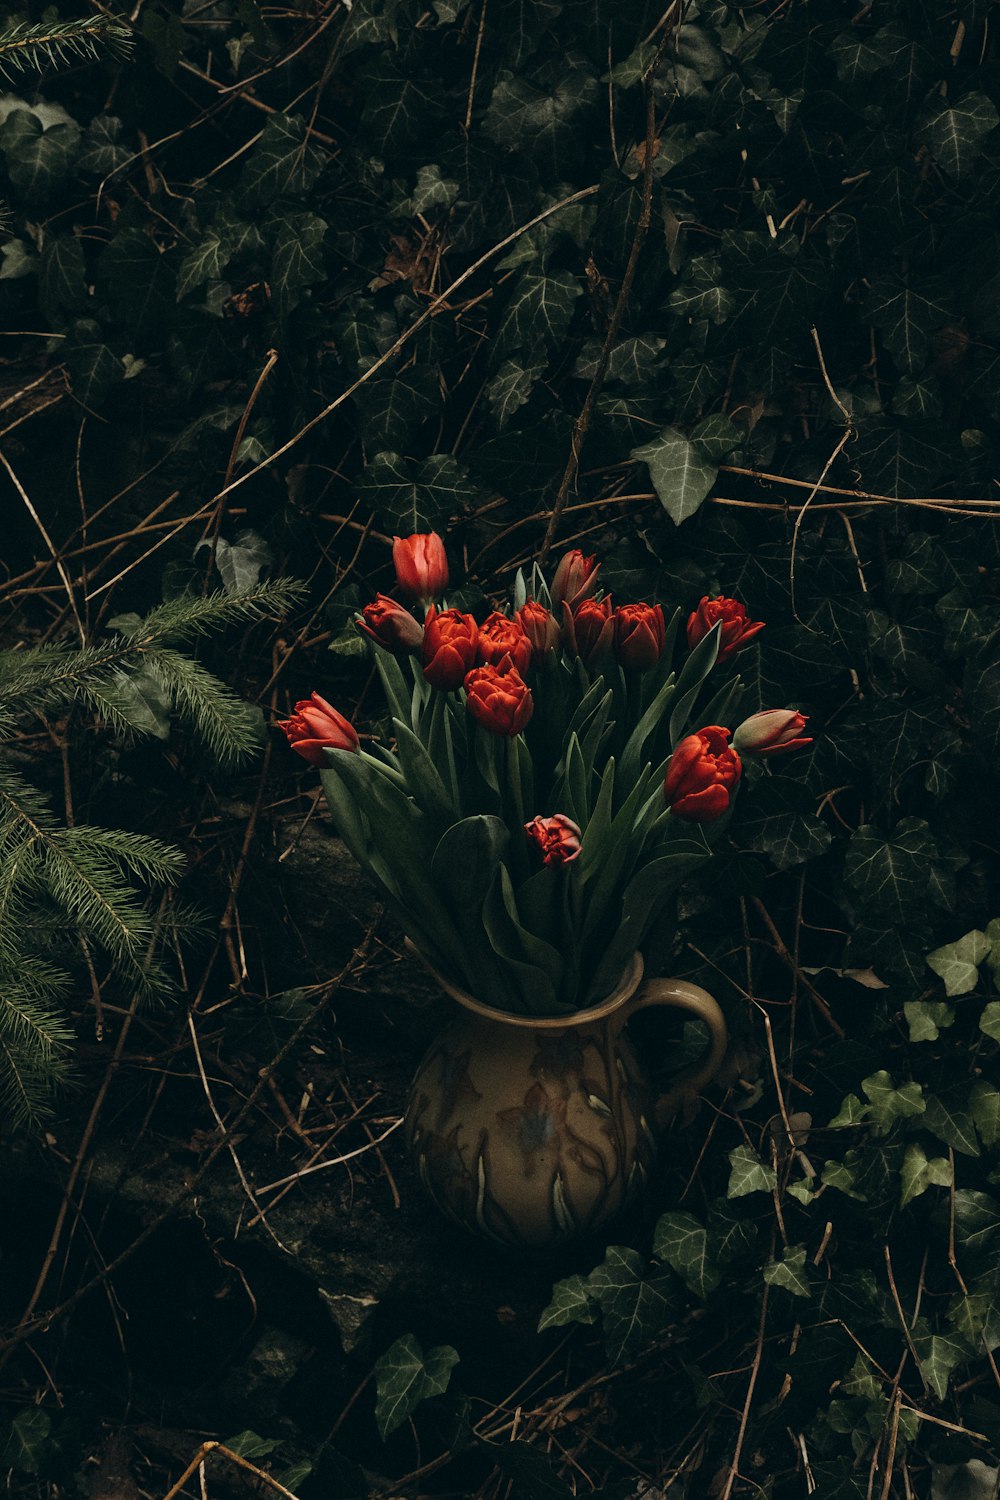 Un jarrón lleno de flores rojas rodeado de vegetación